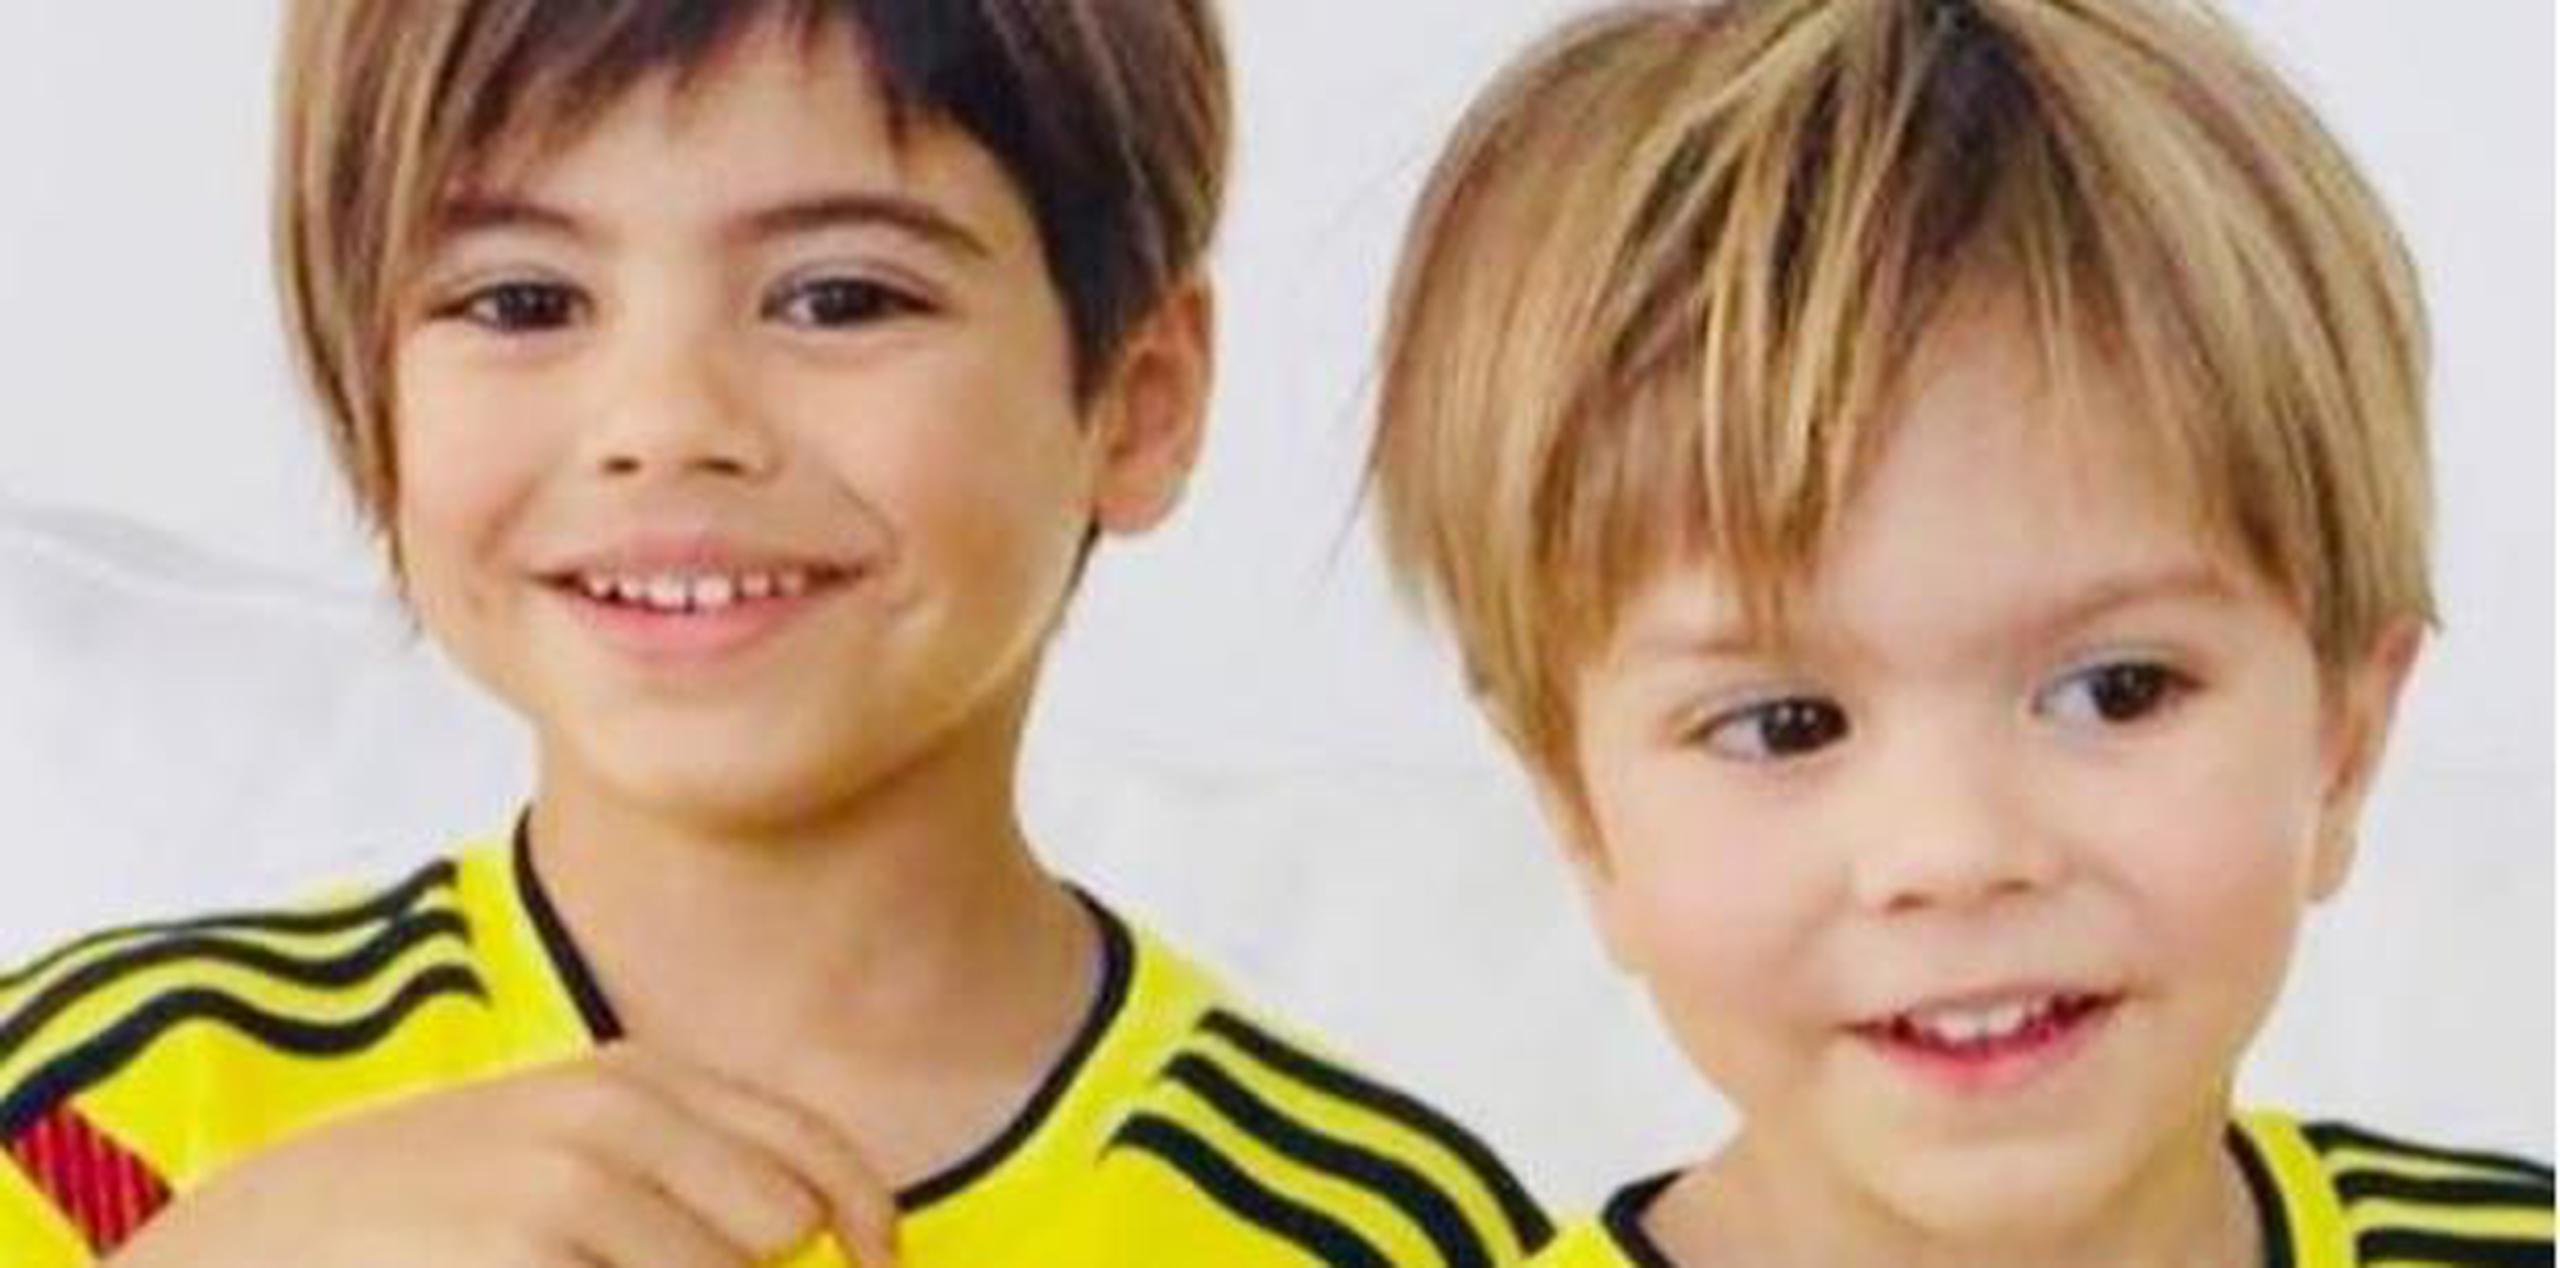 Tras queda fuera de competencia en la cita mundialista, Piqué regresó a Barcelona para estar junto a sus hijos. (Instagram)